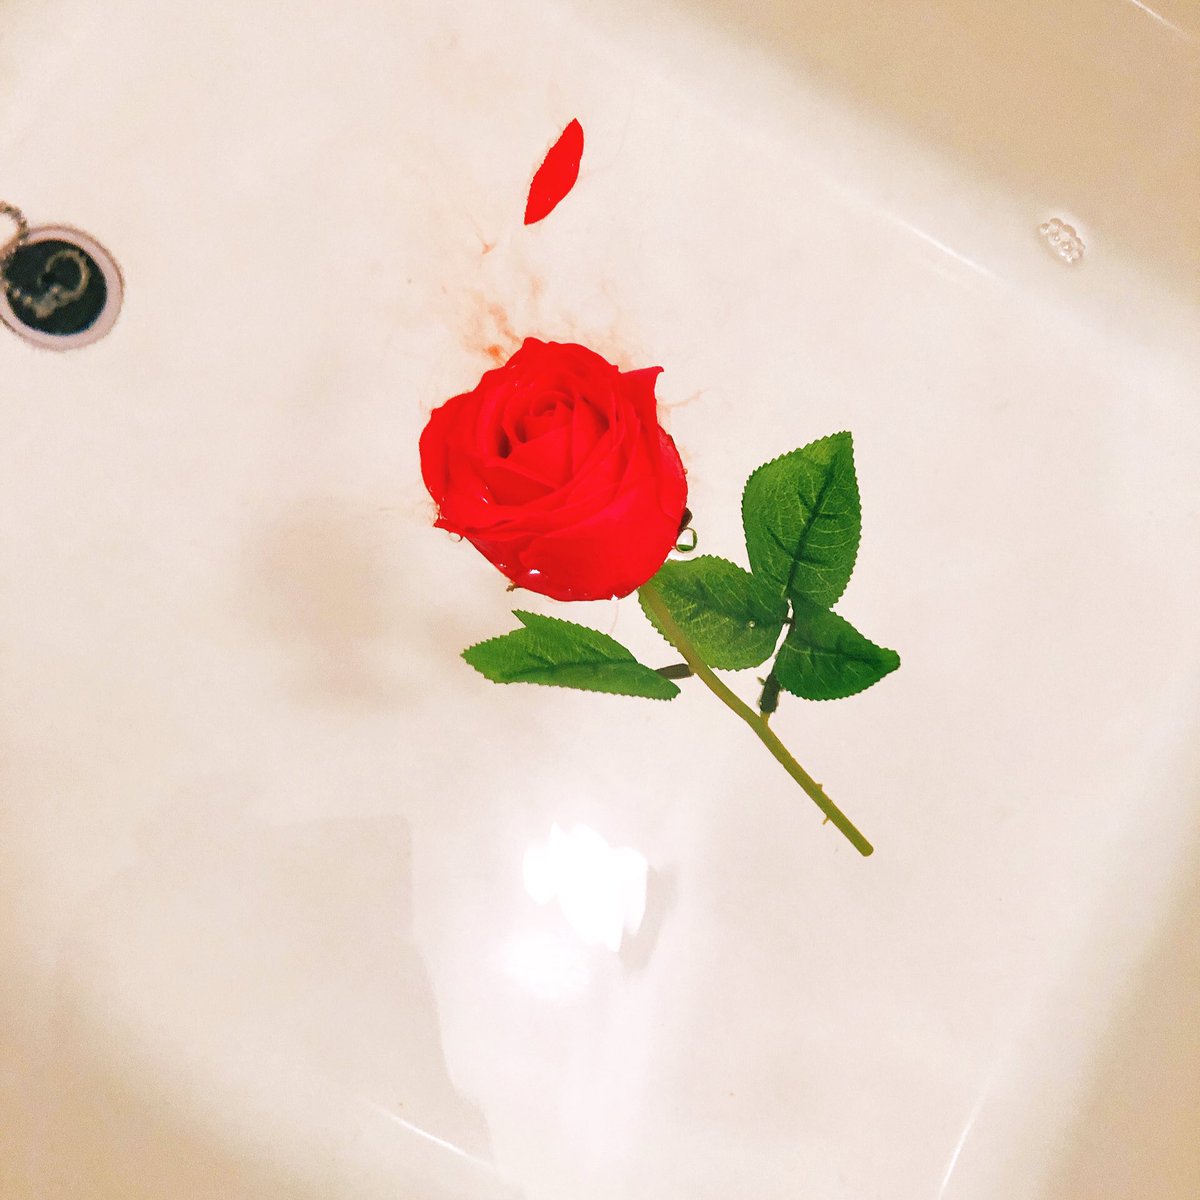 カワニシマオ ウイスキー漫画 En Twitter 送別の品で会社の人から薔薇一輪が入浴剤になってるオシャレなやつもらったので使ってみたら 使用方法間違えちゃって湯船が殺人現場みたいになってしまった 色がリアルな血の色で怖さを感じる